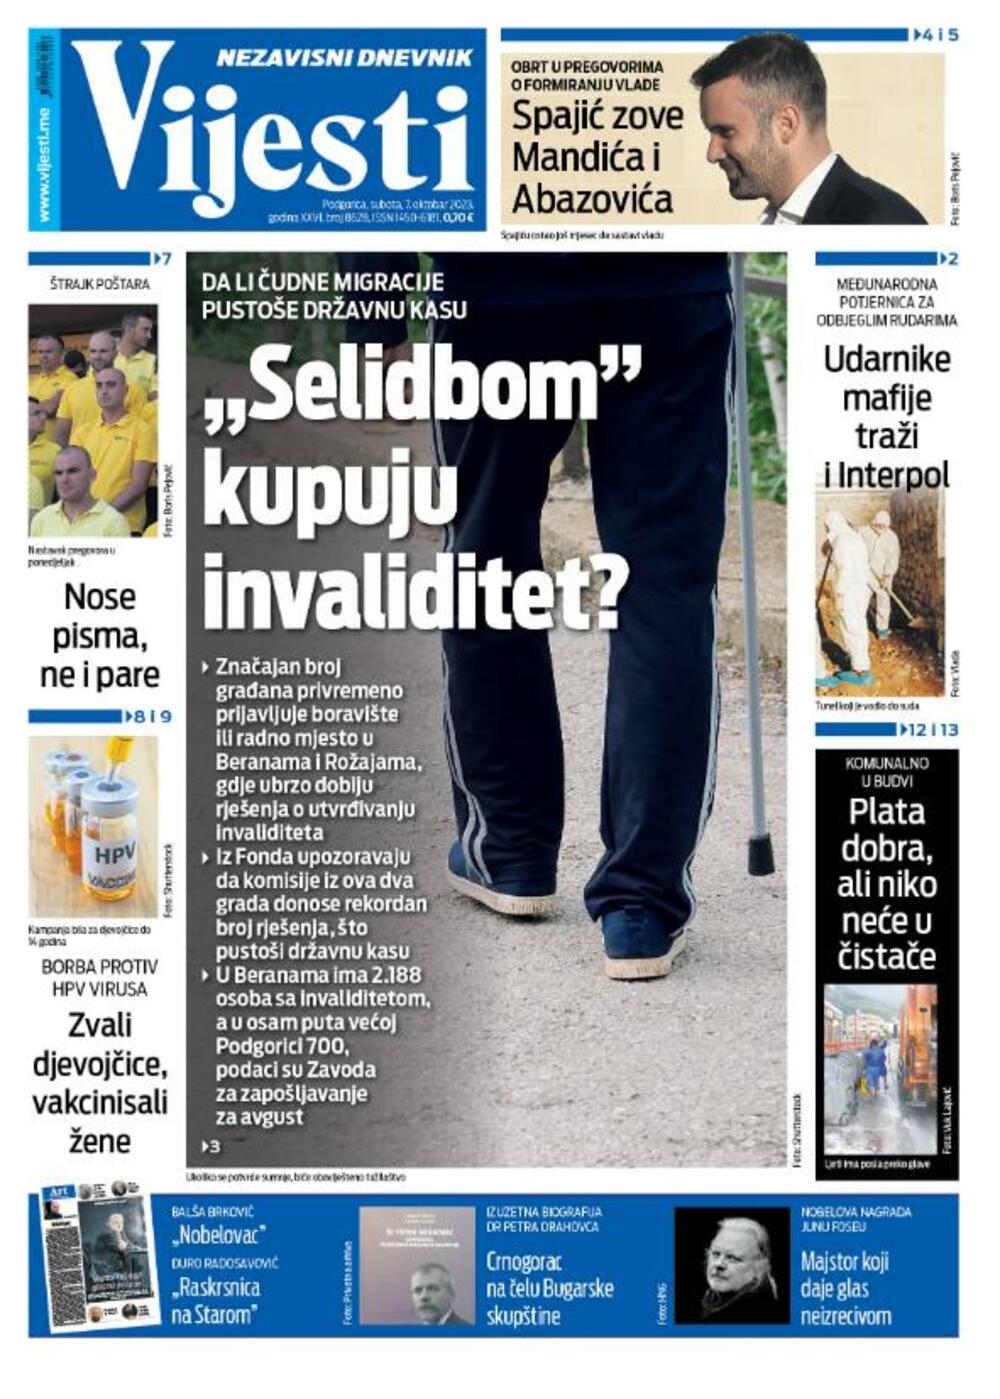 Naslovna strana "Vijesti" za 7. oktobar 2023., Foto: Vijesti